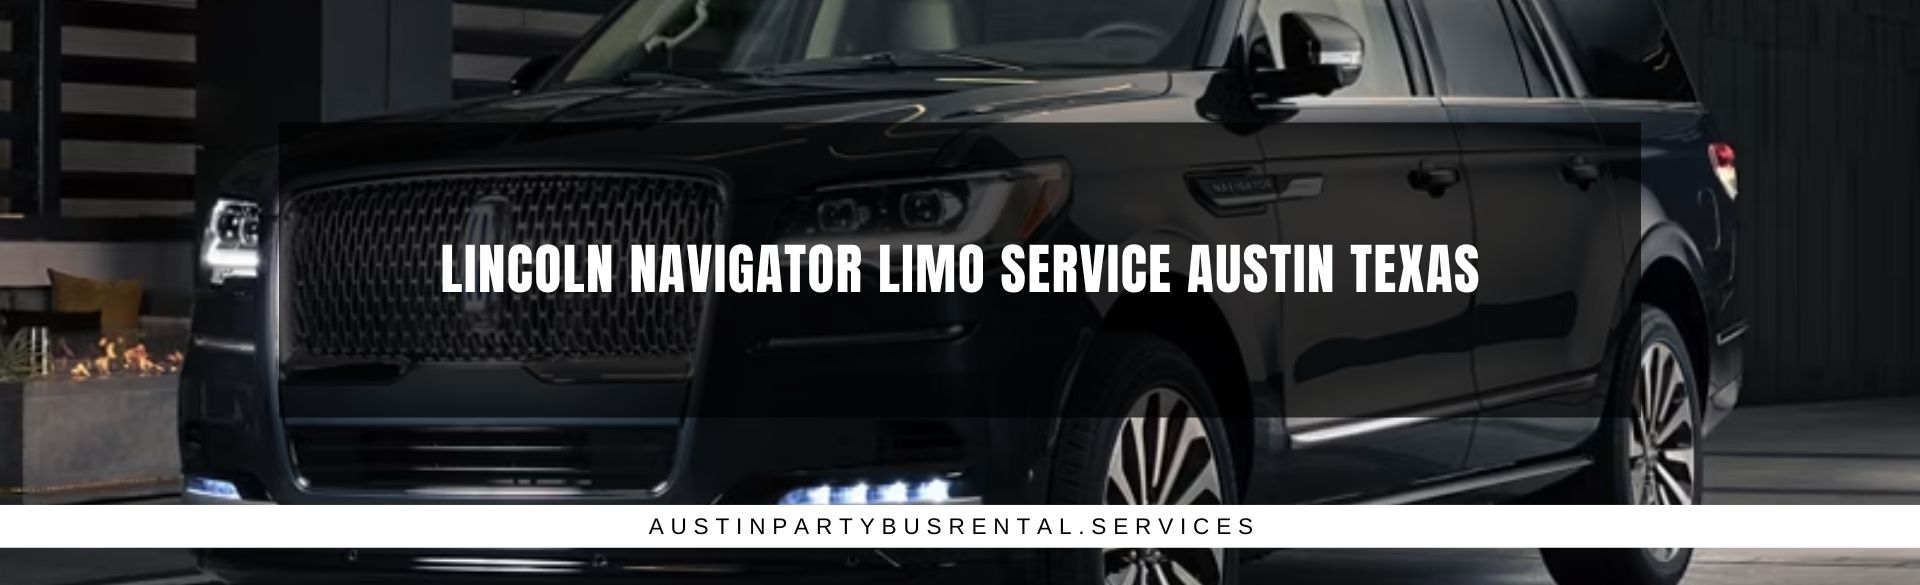 Lincoln Navigator Limo Service Austin Texas